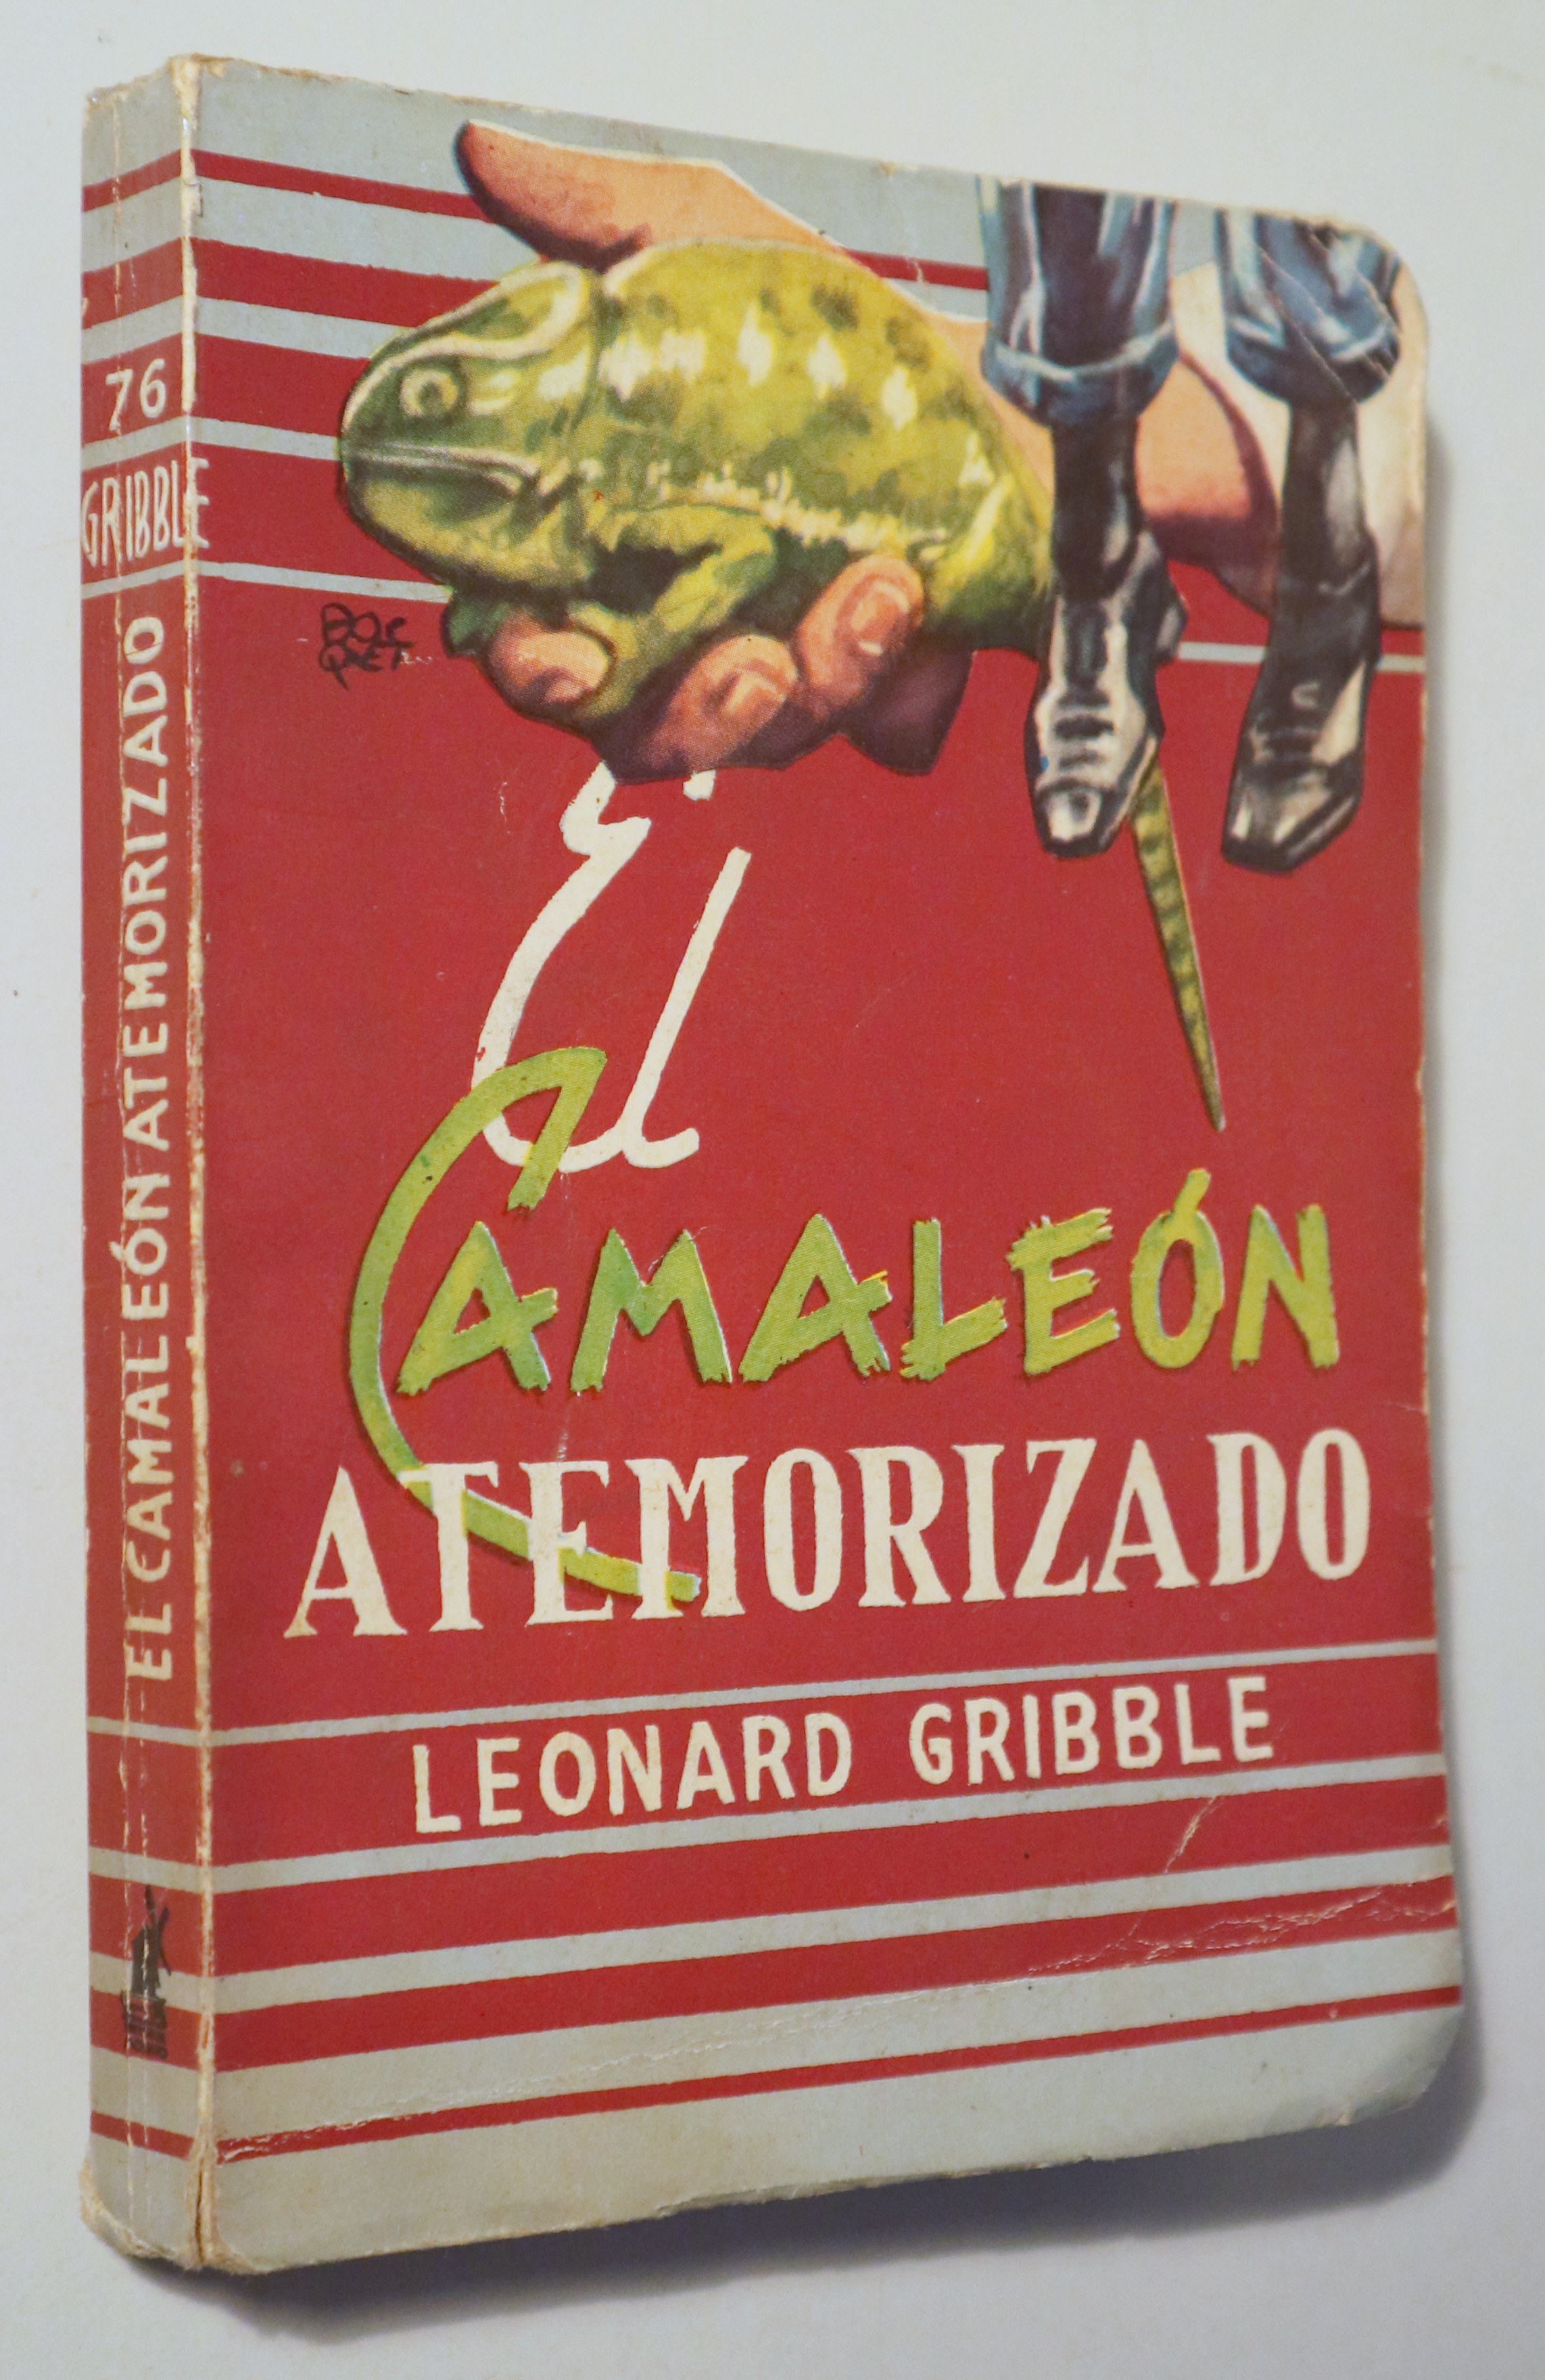 EL CAMALEÓN ATEMORIZADO - Barcelona 1955